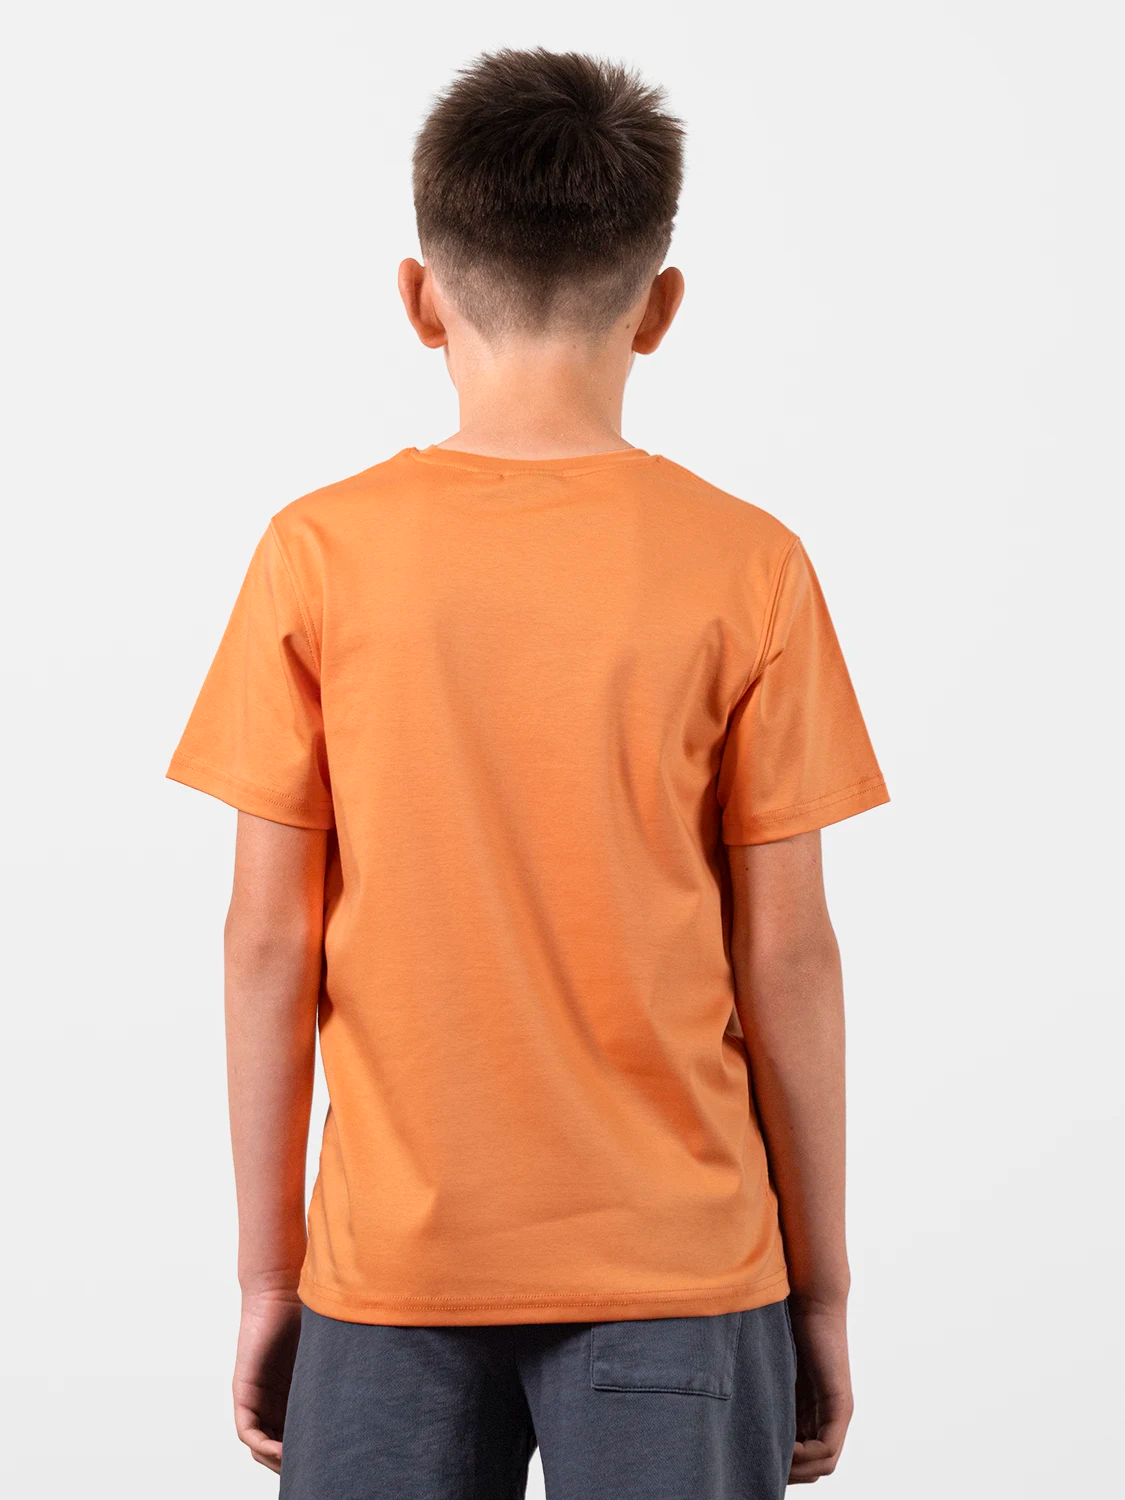 Organic Cotton T-shirt Premium Orange